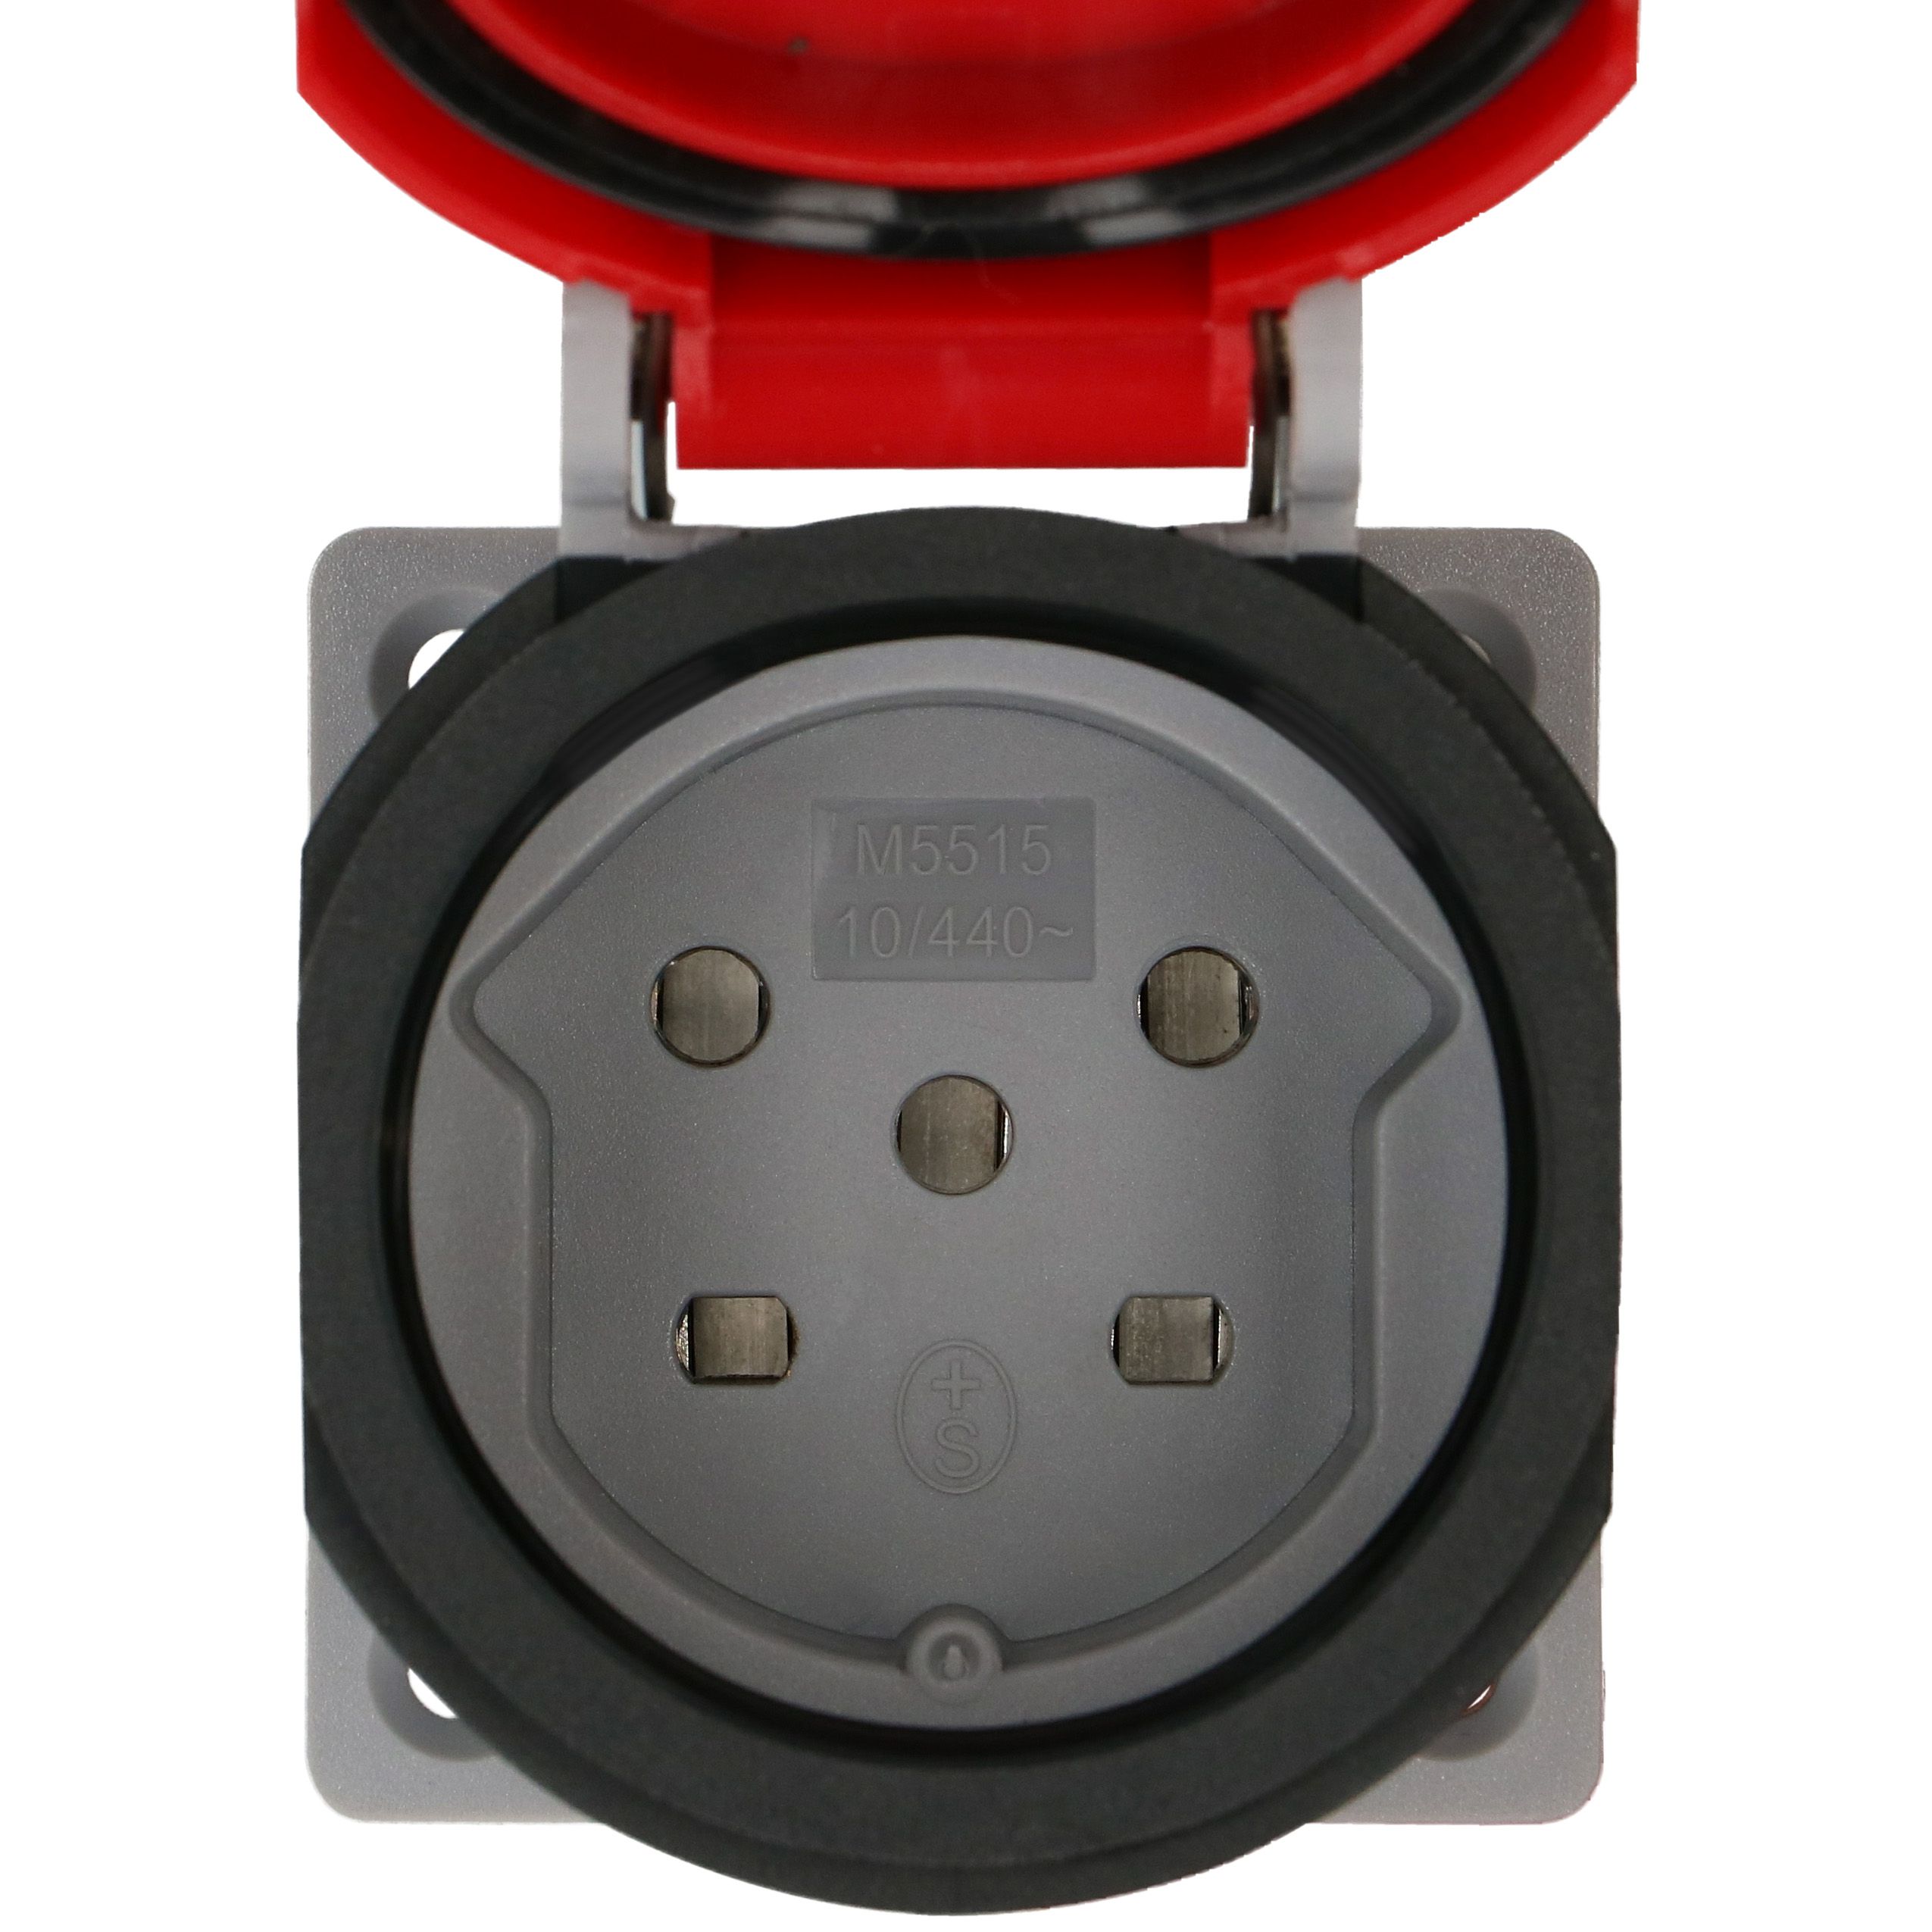 Einbausteckdose 1x Typ 15 3L+N+PE Max Hauri IP55 lichtgrau/rot